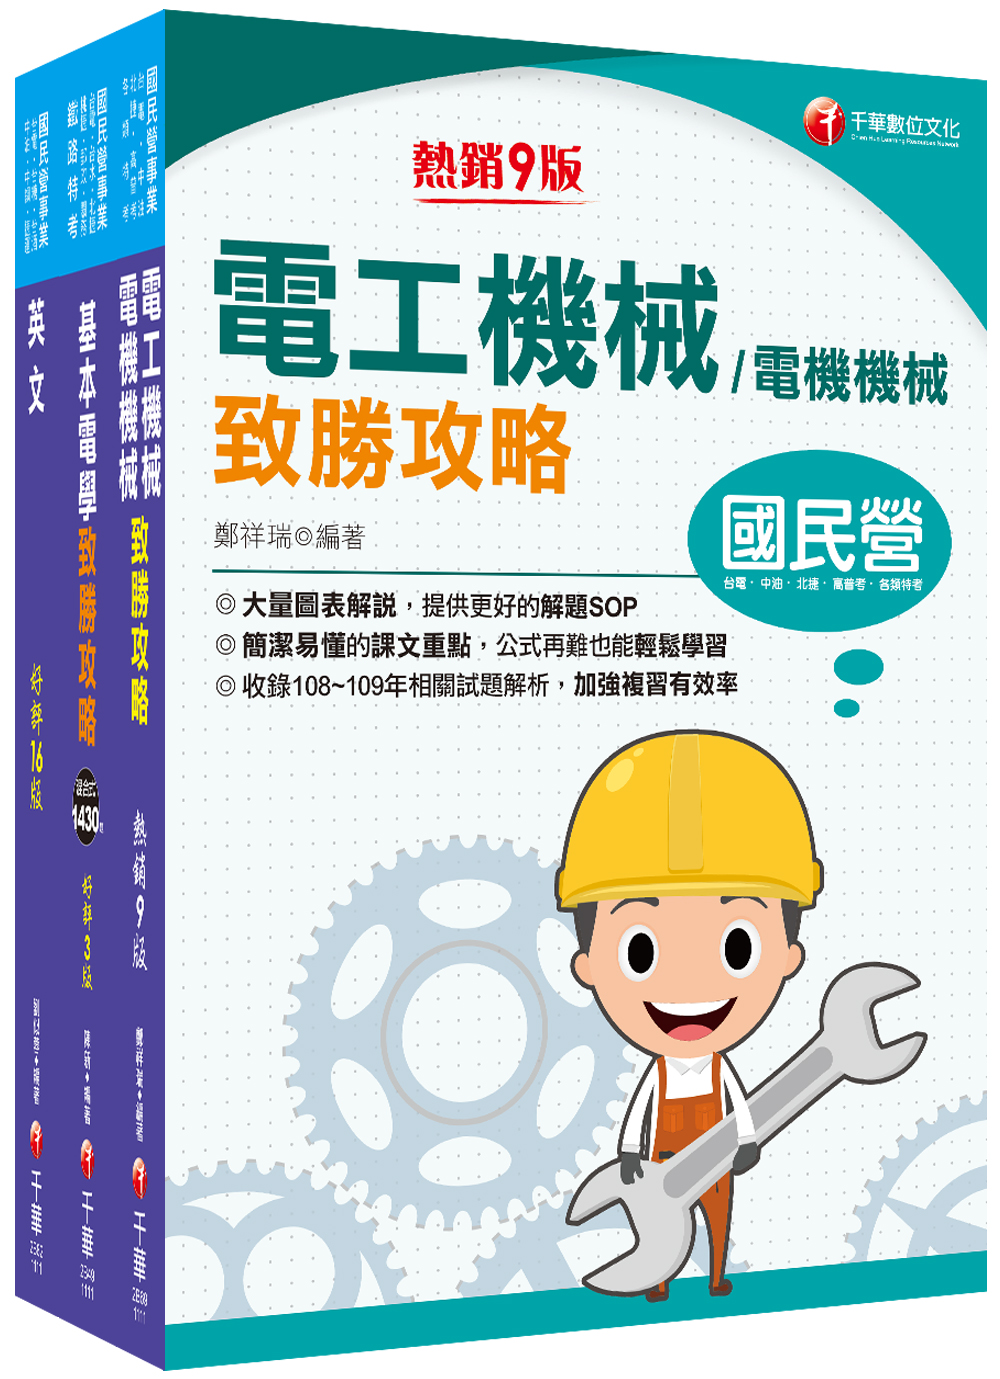 商品圖片 2022[工務類-電力空調維運管理專業職(四)工程師]中華電信從業人員(基層專員)遴選課文版套書